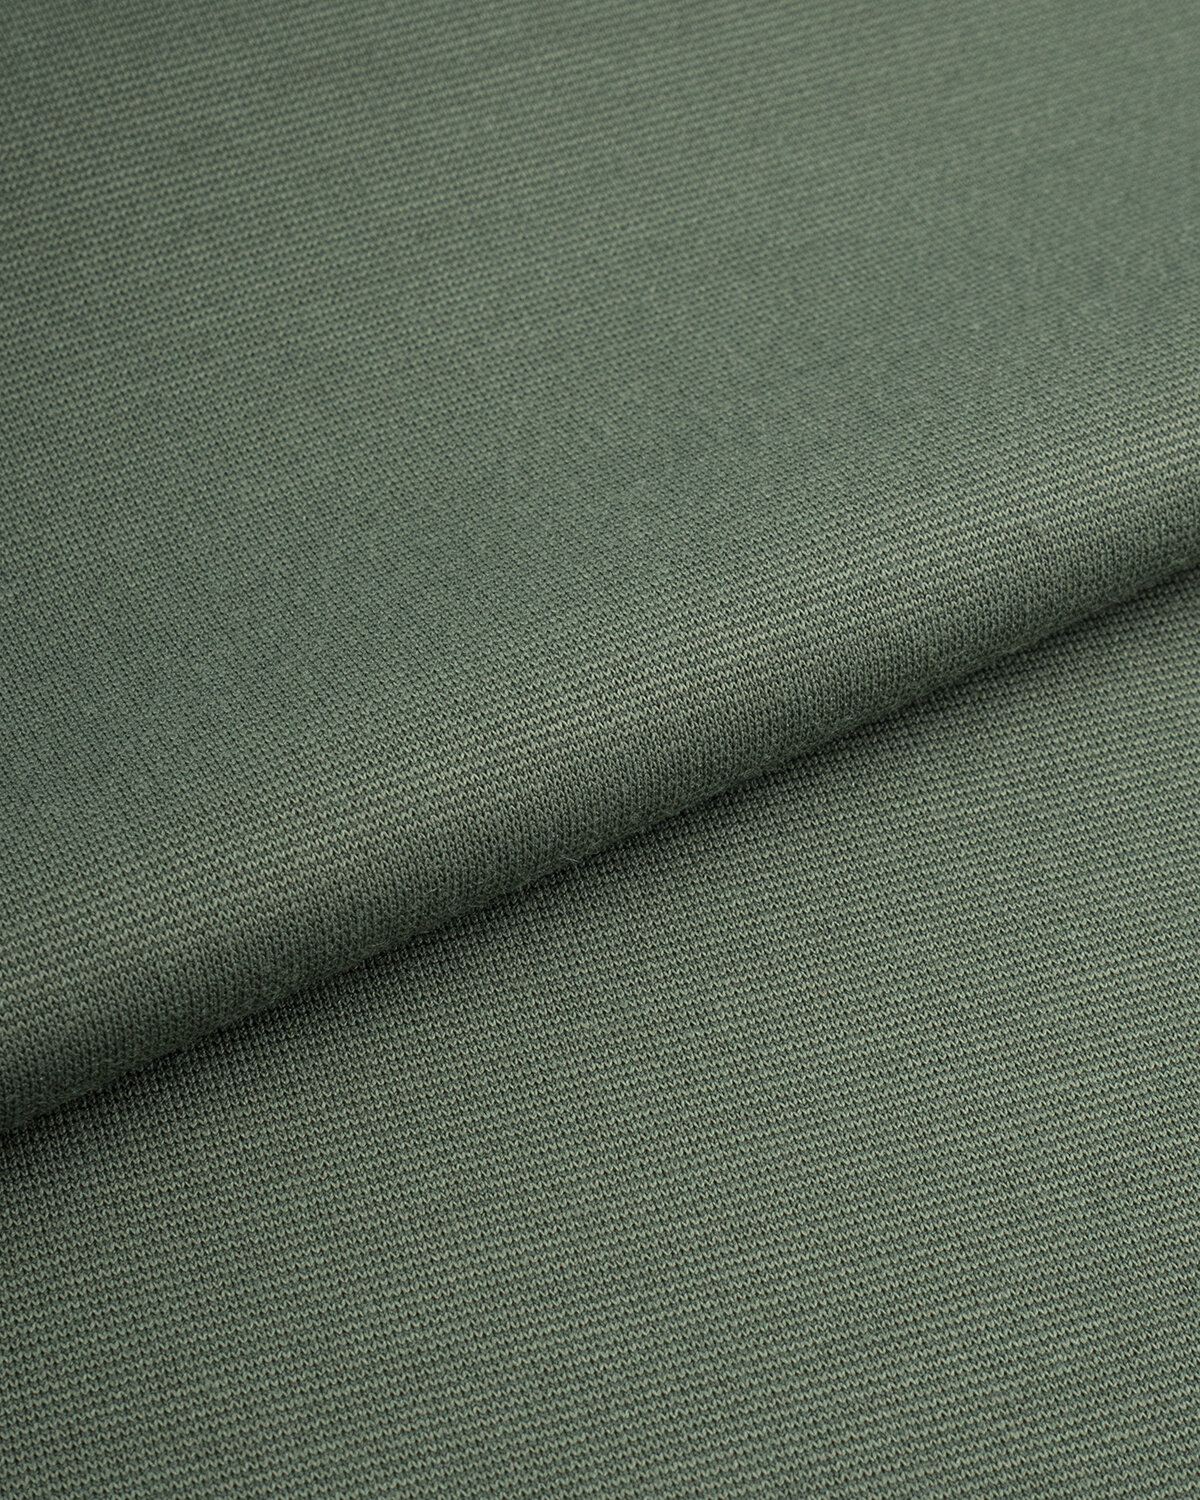 Ткань для шитья и рукоделия Джерси Полирома 1 м * 150 см розовый 015